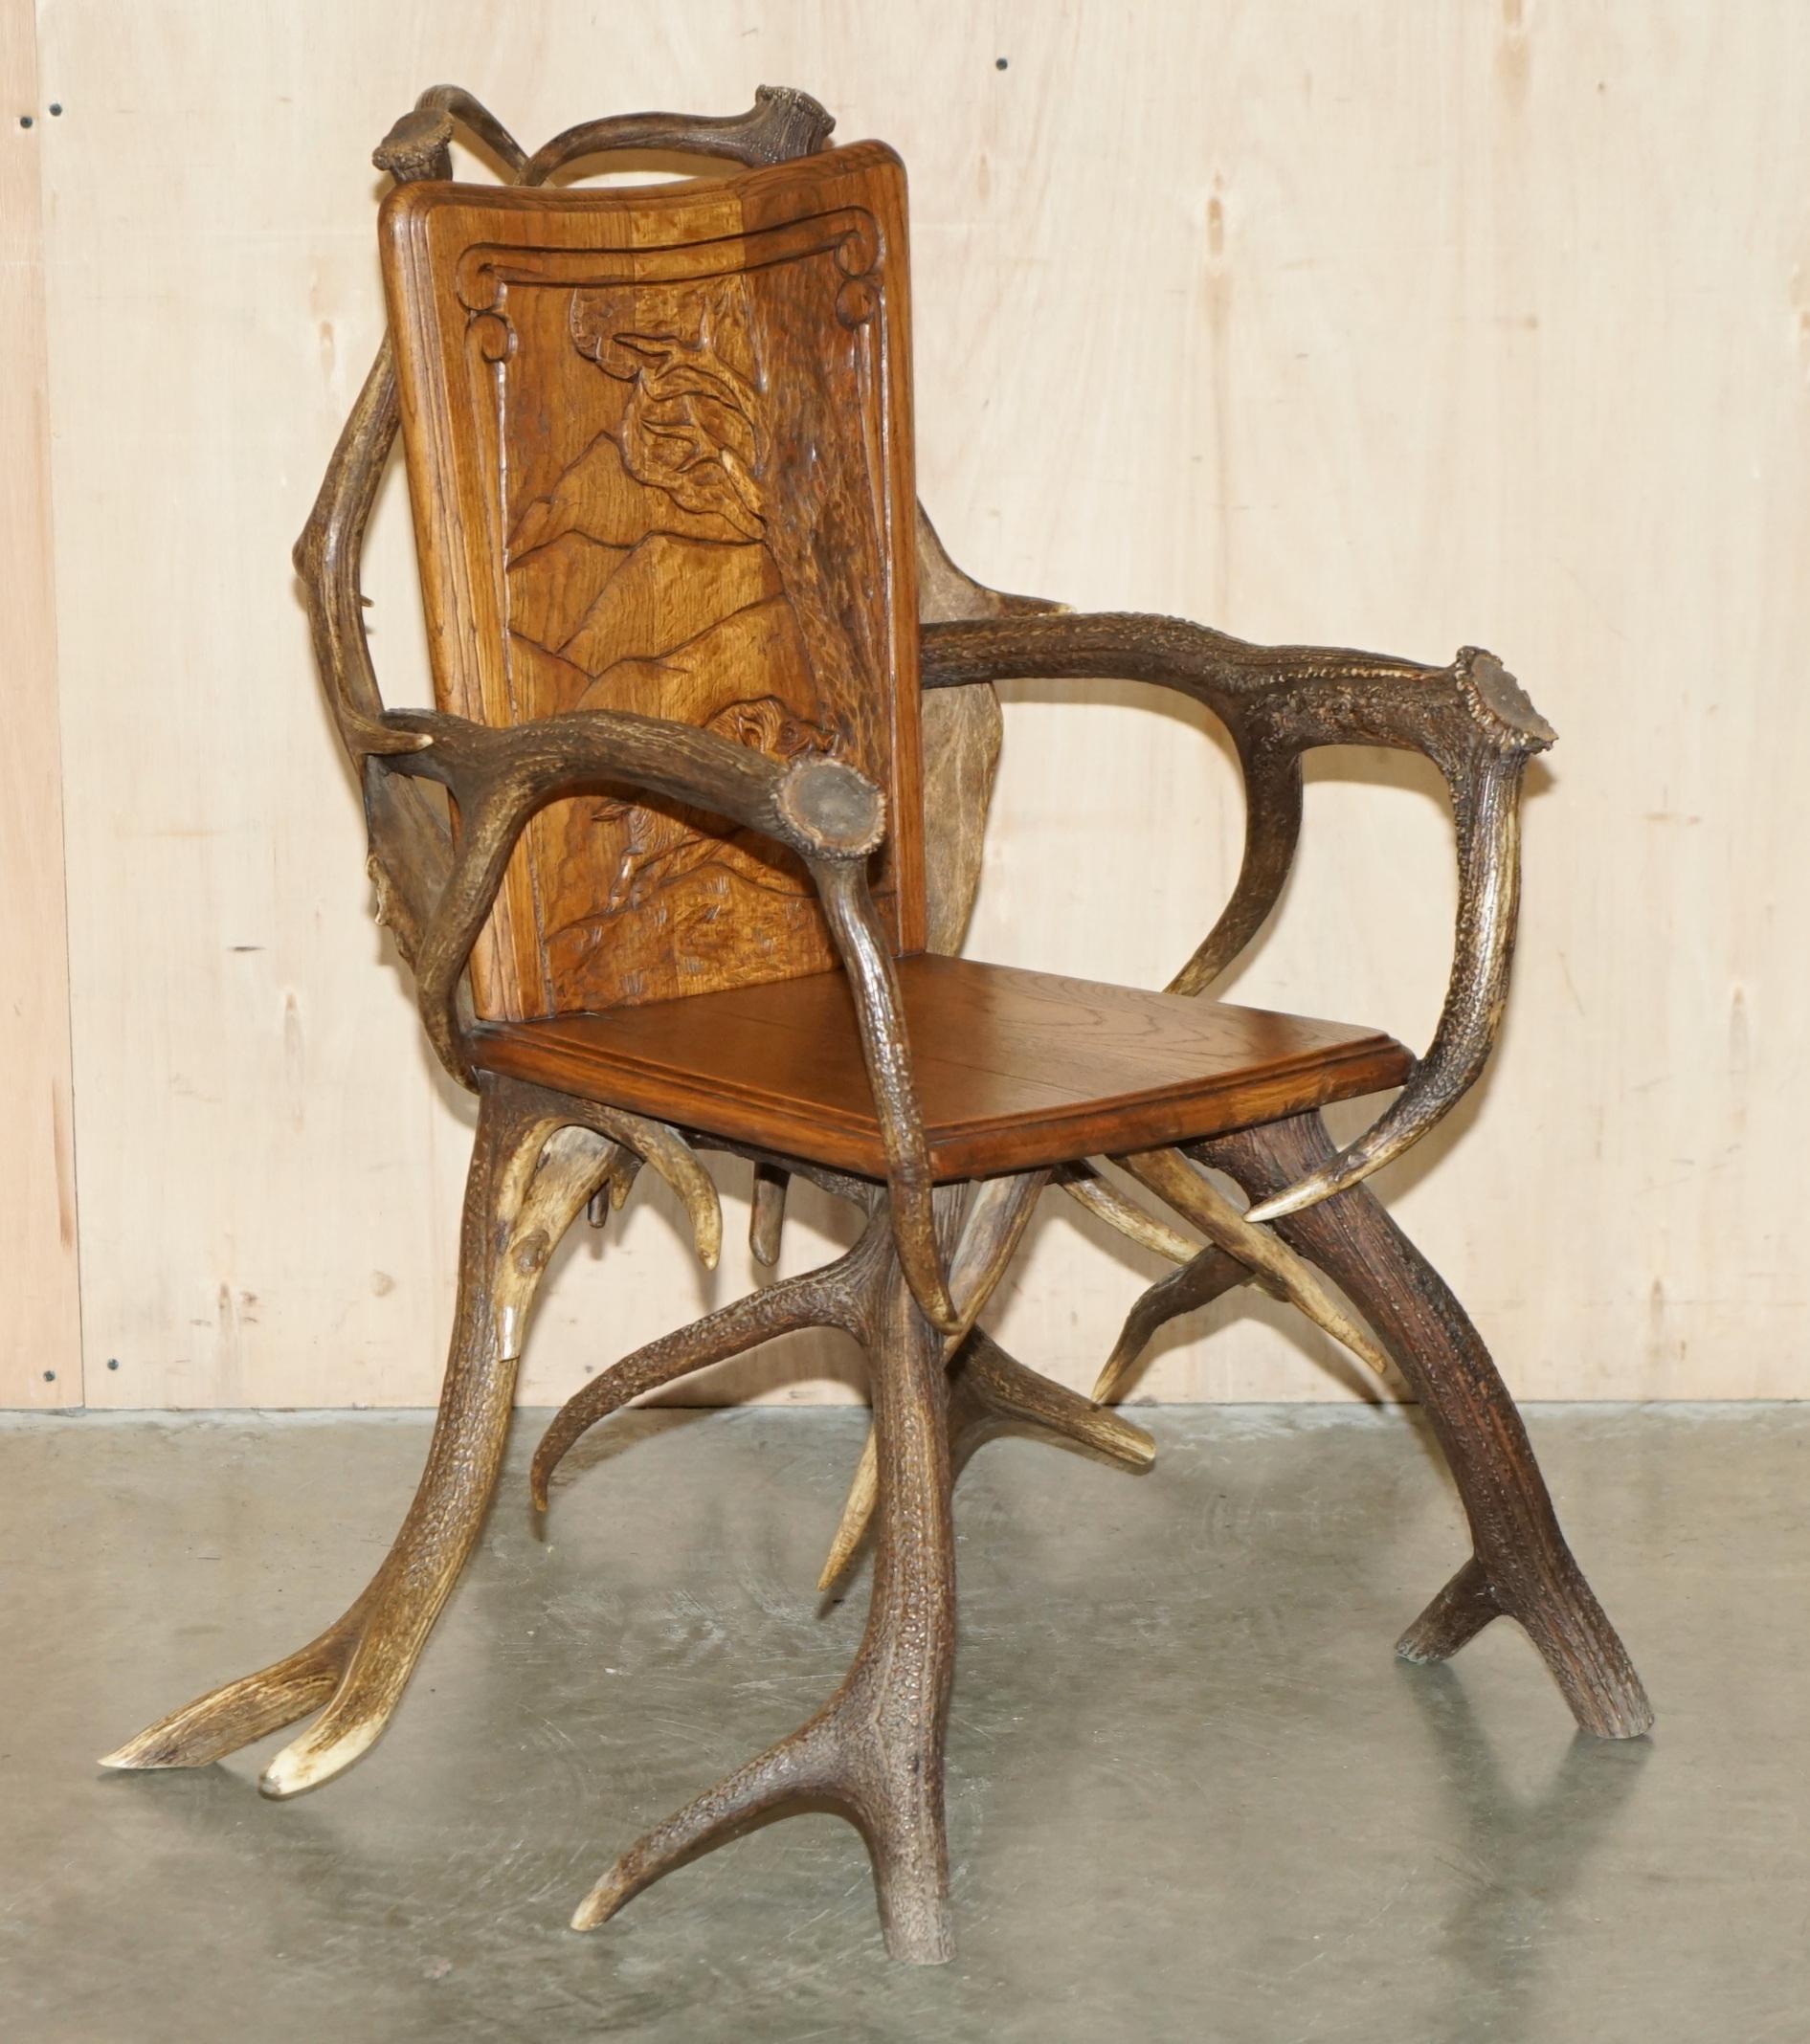 Royal House Antiques

The House Antiques a le plaisir d'offrir à la vente cette paire très rare de fauteuils en bois de forêt noire d'origine allemande de la fin du 19e siècle, qui font partie d'une suite. 

Veuillez noter que les frais de livraison